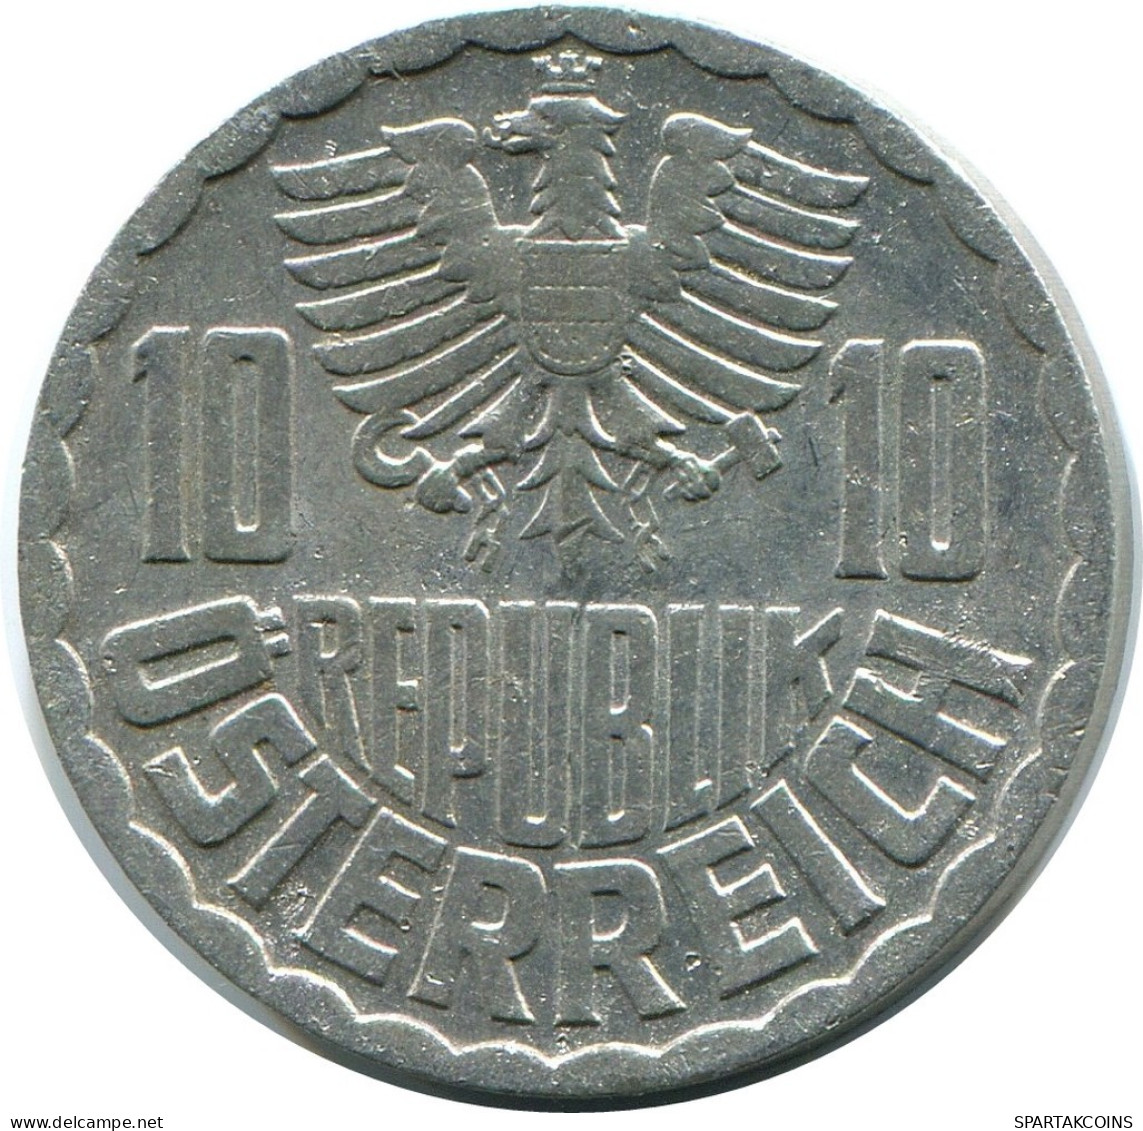 10 GROSCHEN 1971 AUSTRIA Coin SILVER #AZ564.U.A - Austria